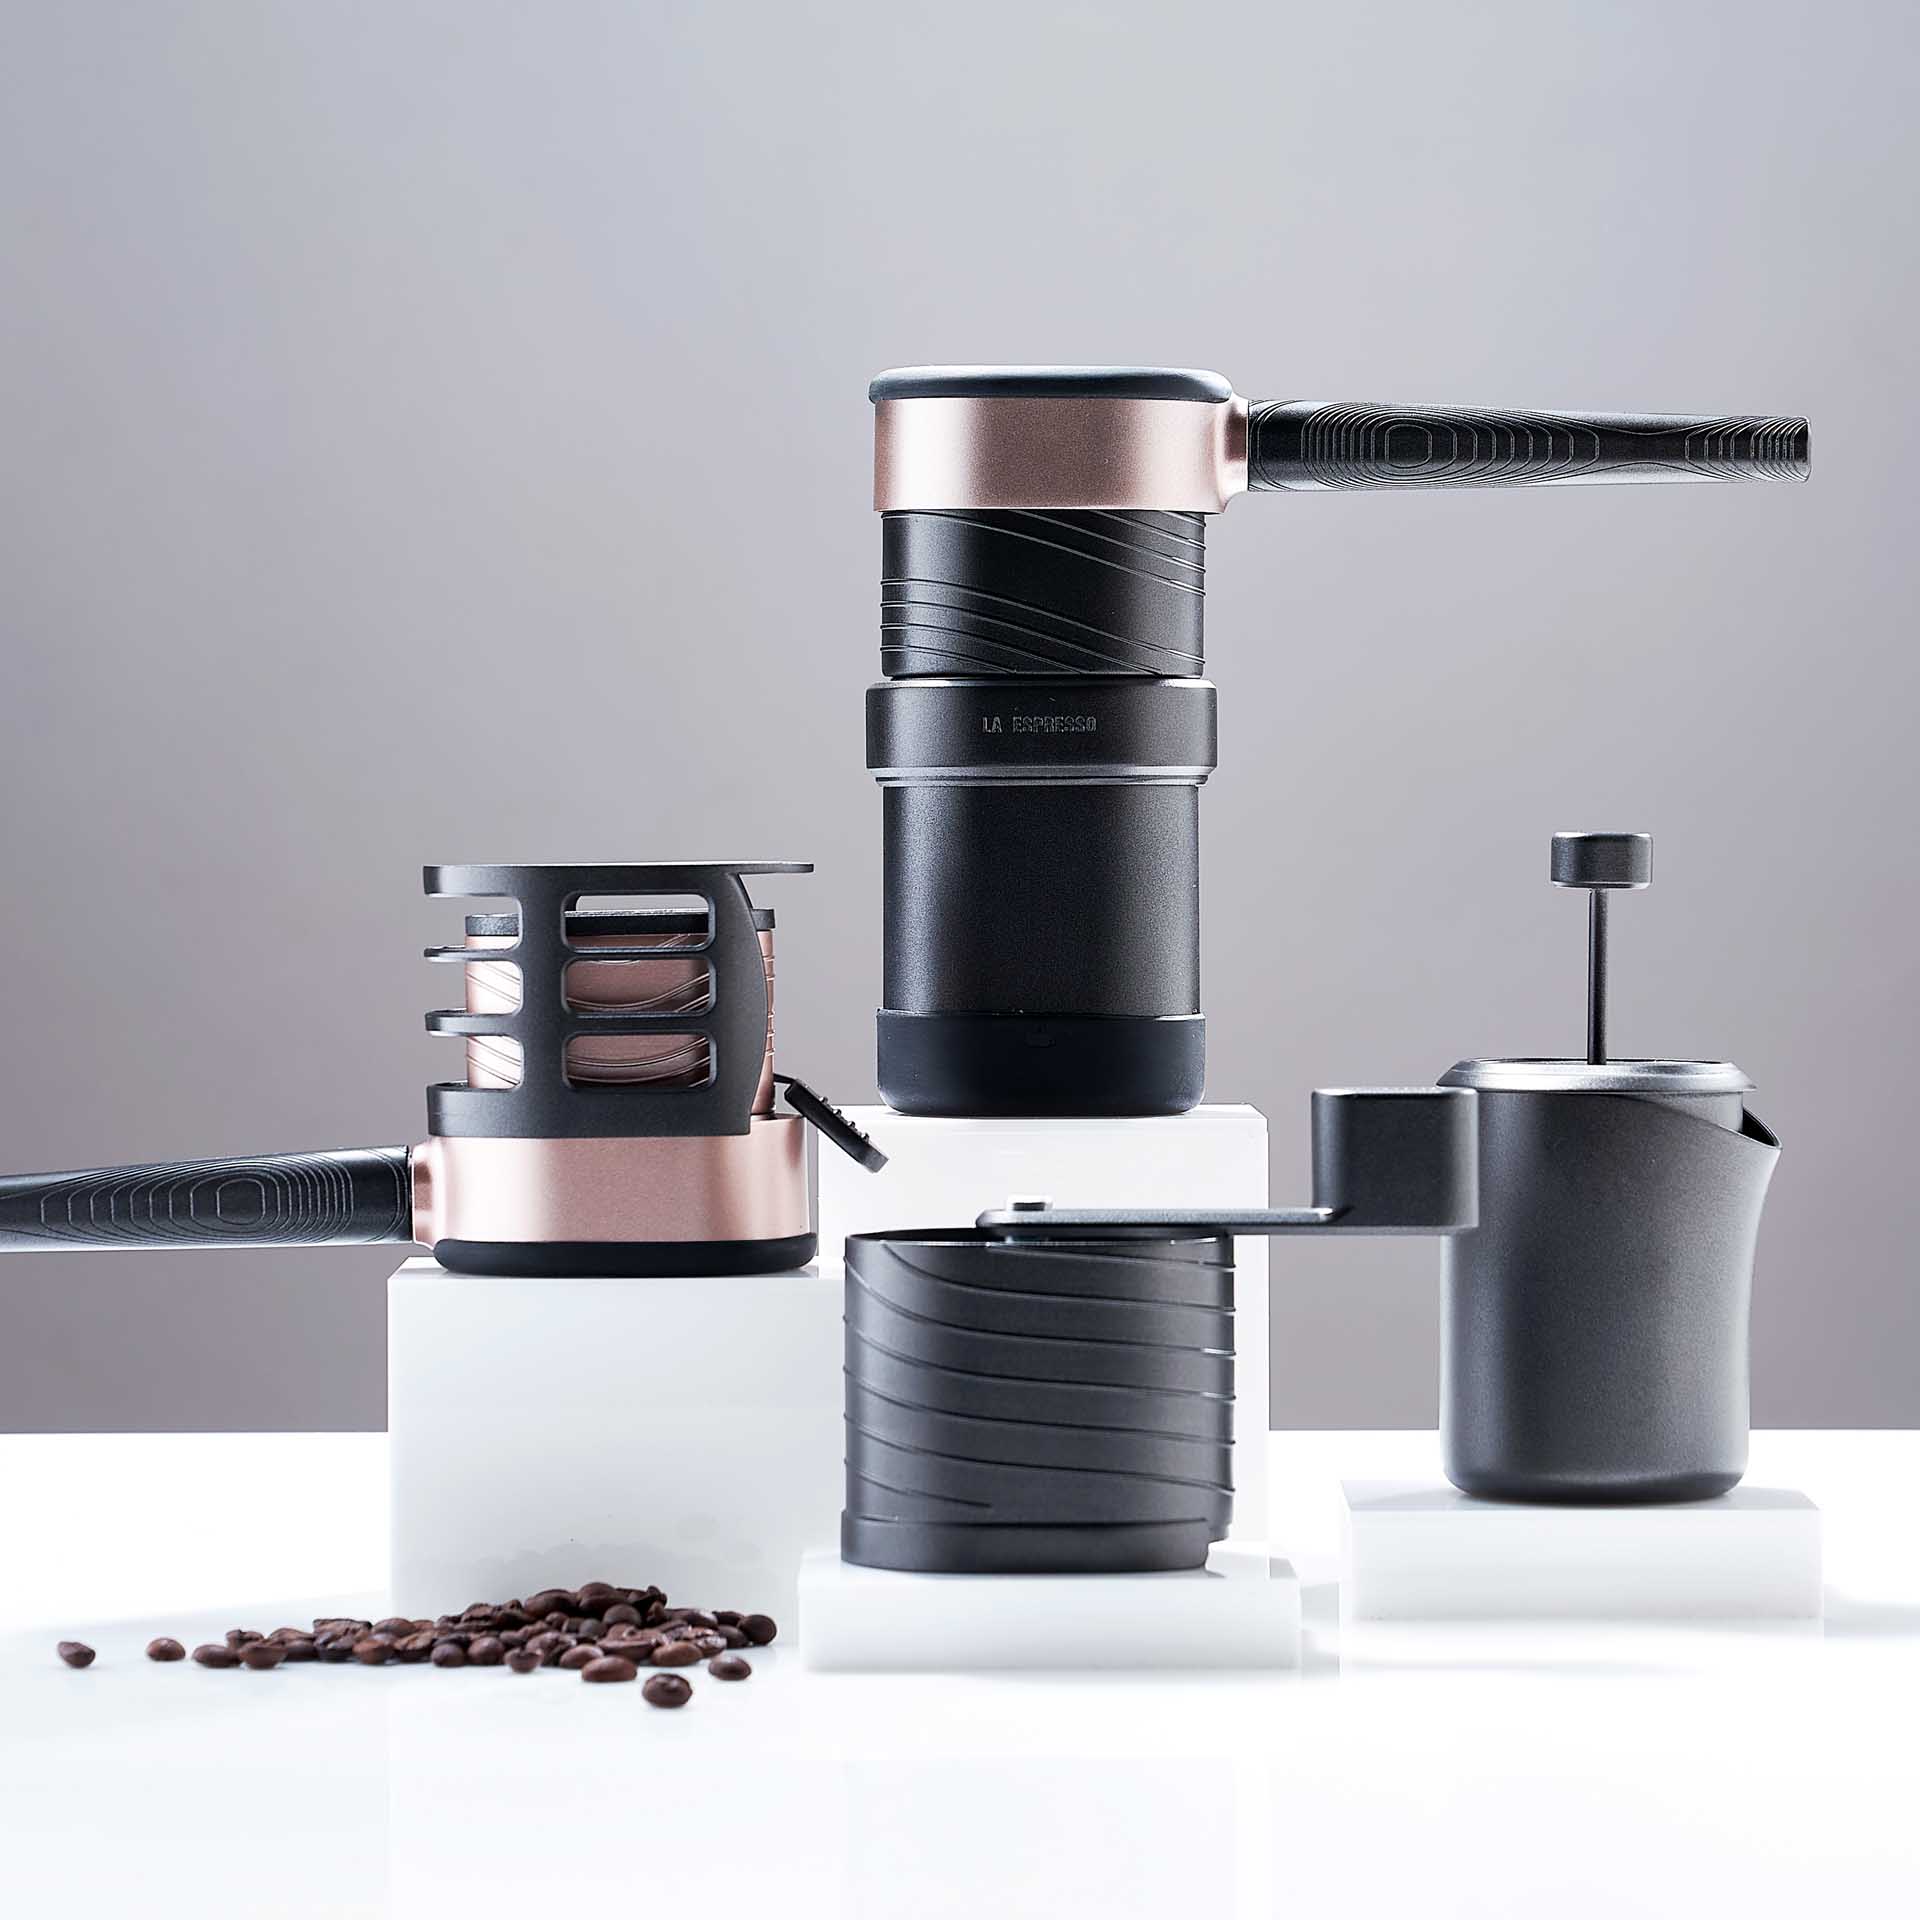 La Espresso Espresso Maker for Travel by Yun Yun Hung